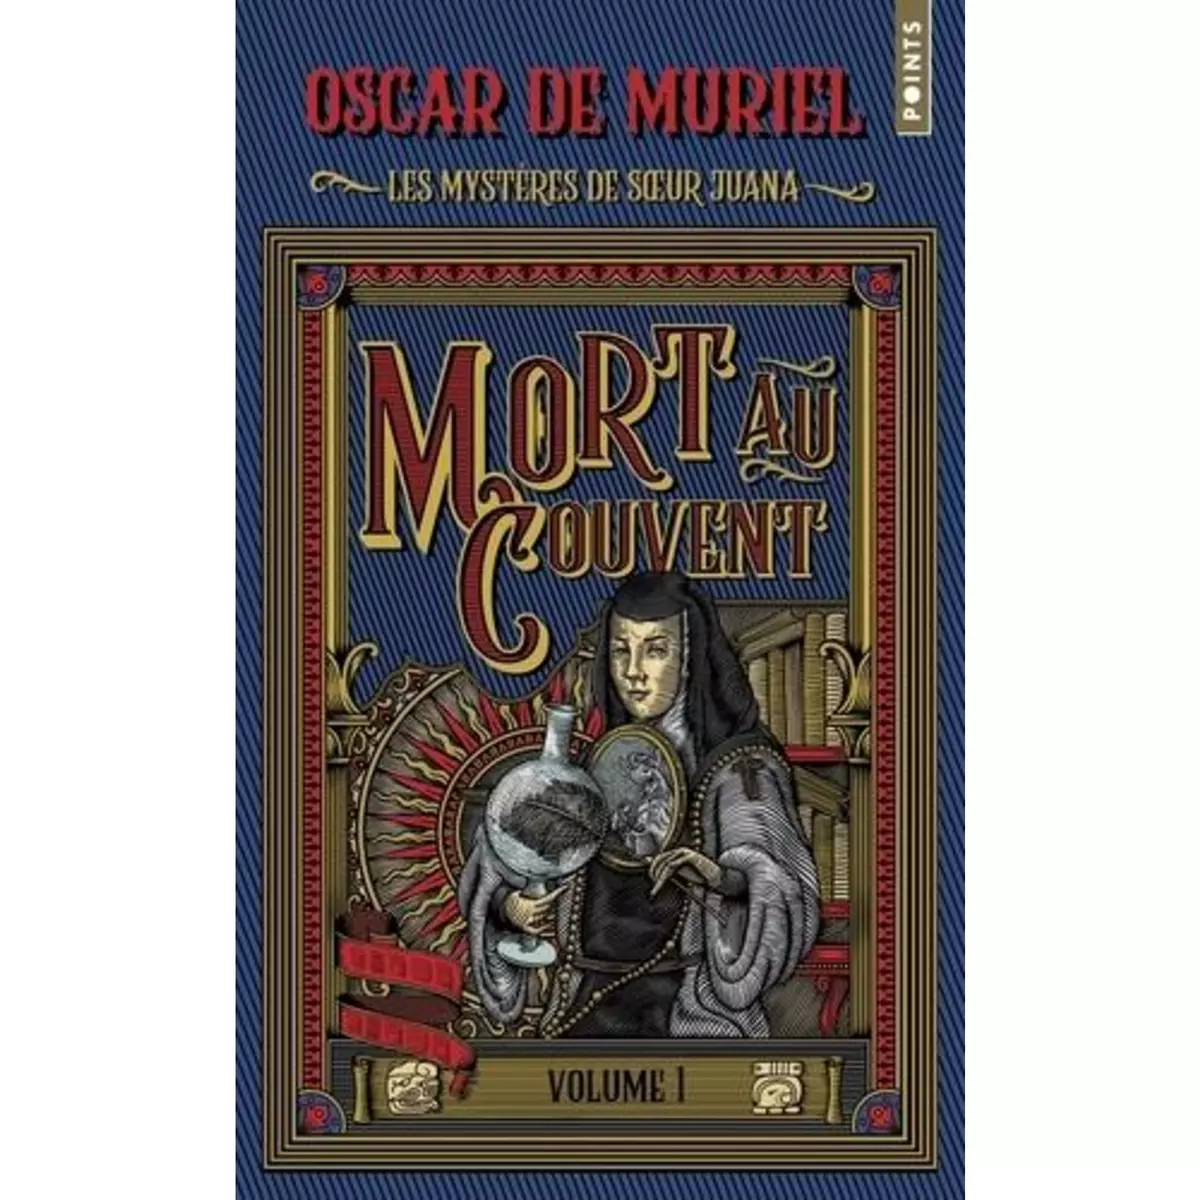  LES MYSTERES DE SOEUR JUANA TOME 1 : MORT AU COUVENT, Muriel Oscar de